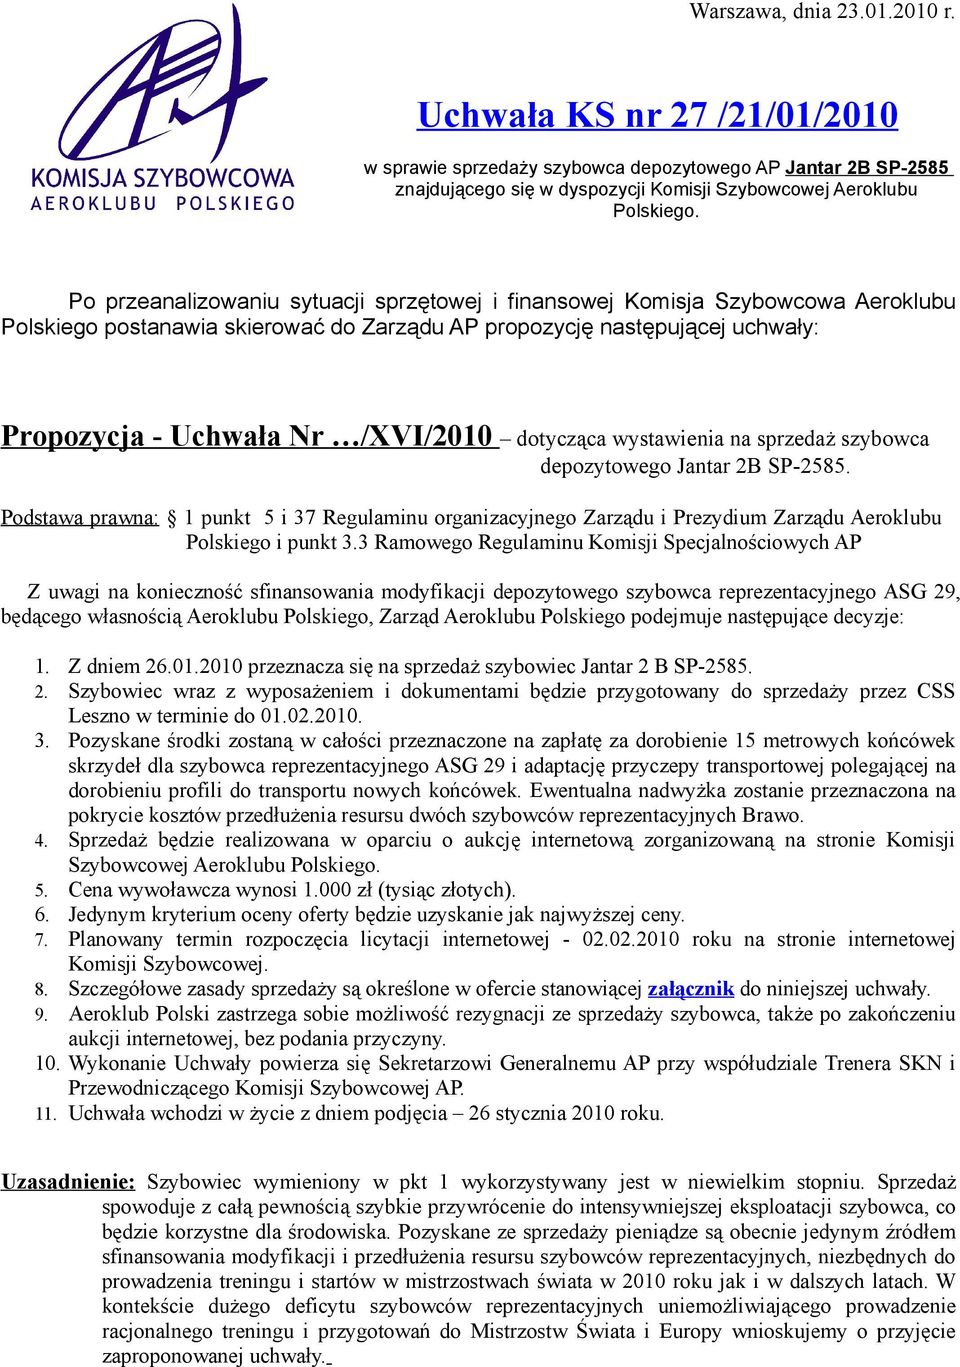 dotycząca wystawienia na sprzedaż szybowca depozytowego Jantar 2B SP-2585. Podstawa prawna: 1 punkt 5 i 37 Regulaminu organizacyjnego Zarządu i Prezydium Zarządu Aeroklubu Polskiego i punkt 3.